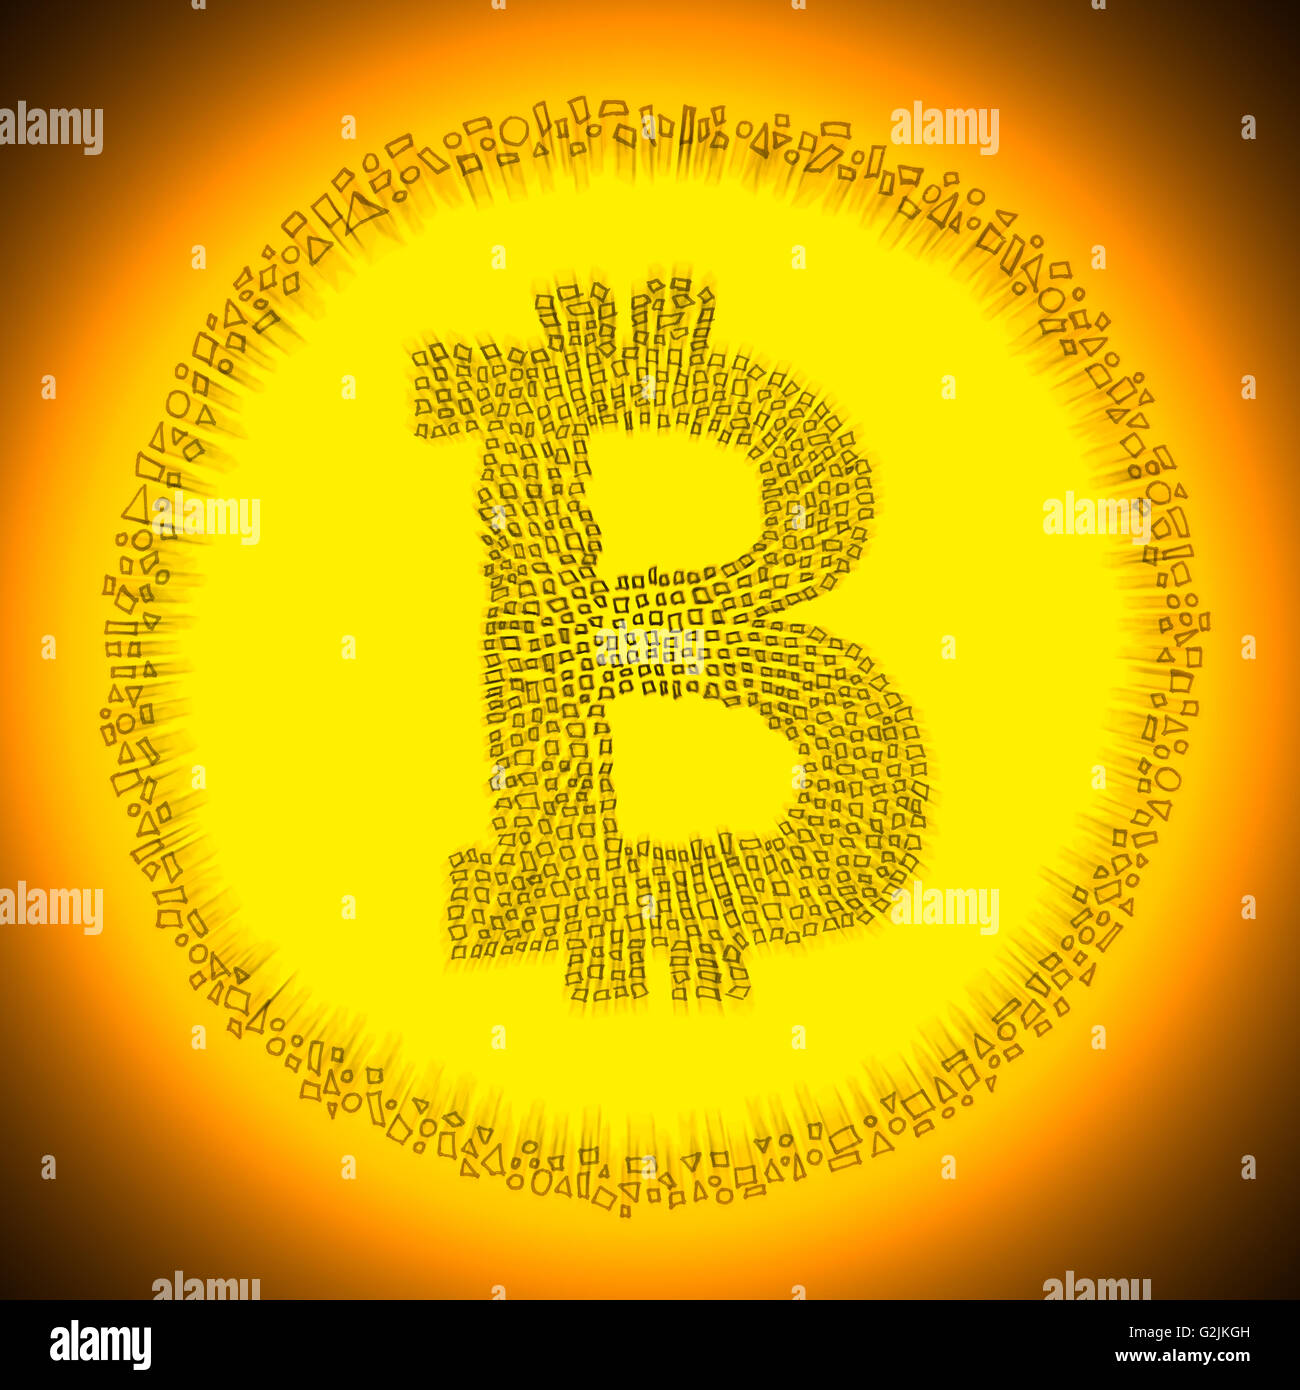 Golden radiante Blockchain Bitcoin logotipo tecnología digital. Ilustración de una moneda electrónica descentralizada crypto moneda. Foto de stock